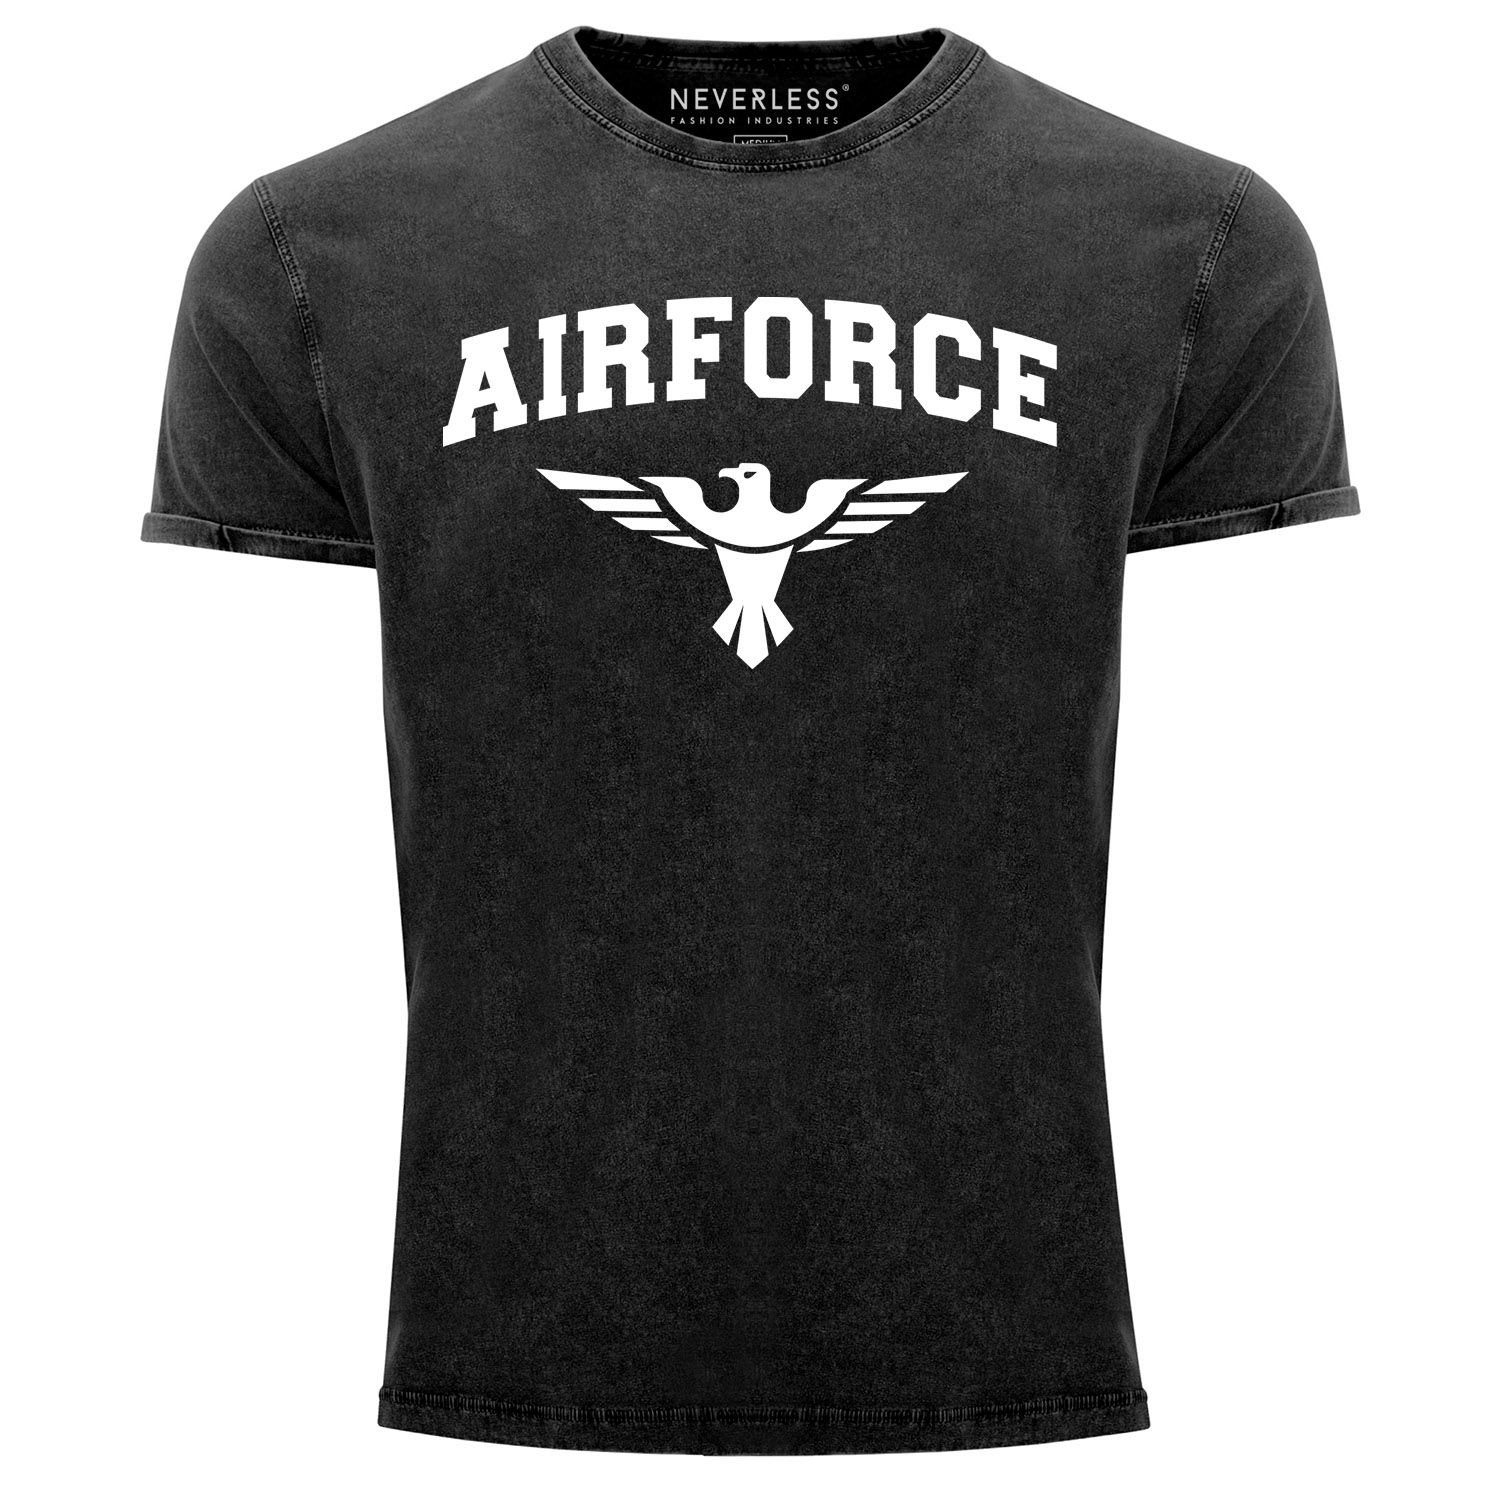 Neverless Print-Shirt Herren Vintage Shirt Airforce US Army Adler Militär Printshirt T-Shirt Aufdruck Used Look Neverless® mit Print